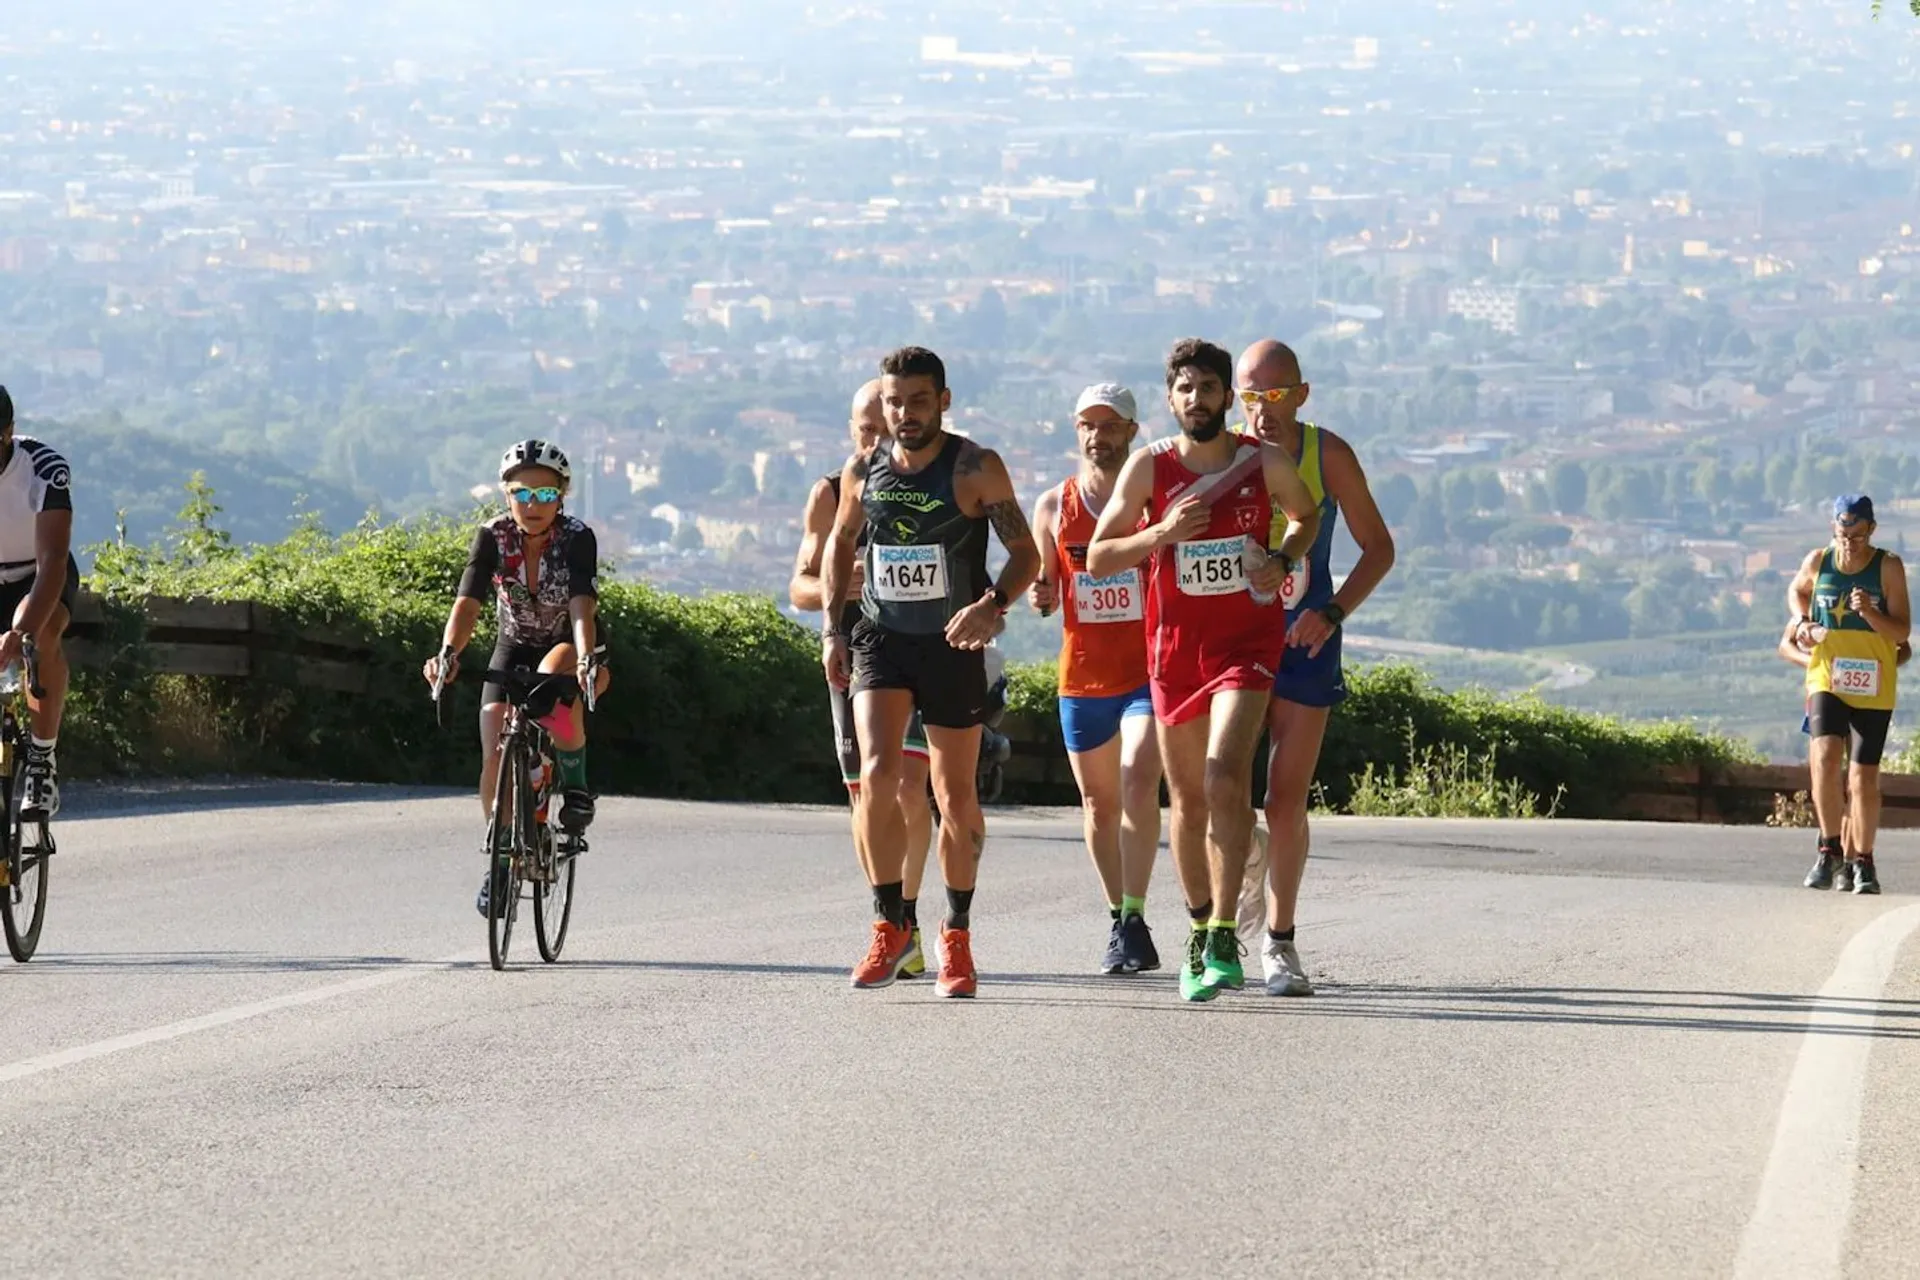 Pistoia-Abetone Ultramarathon